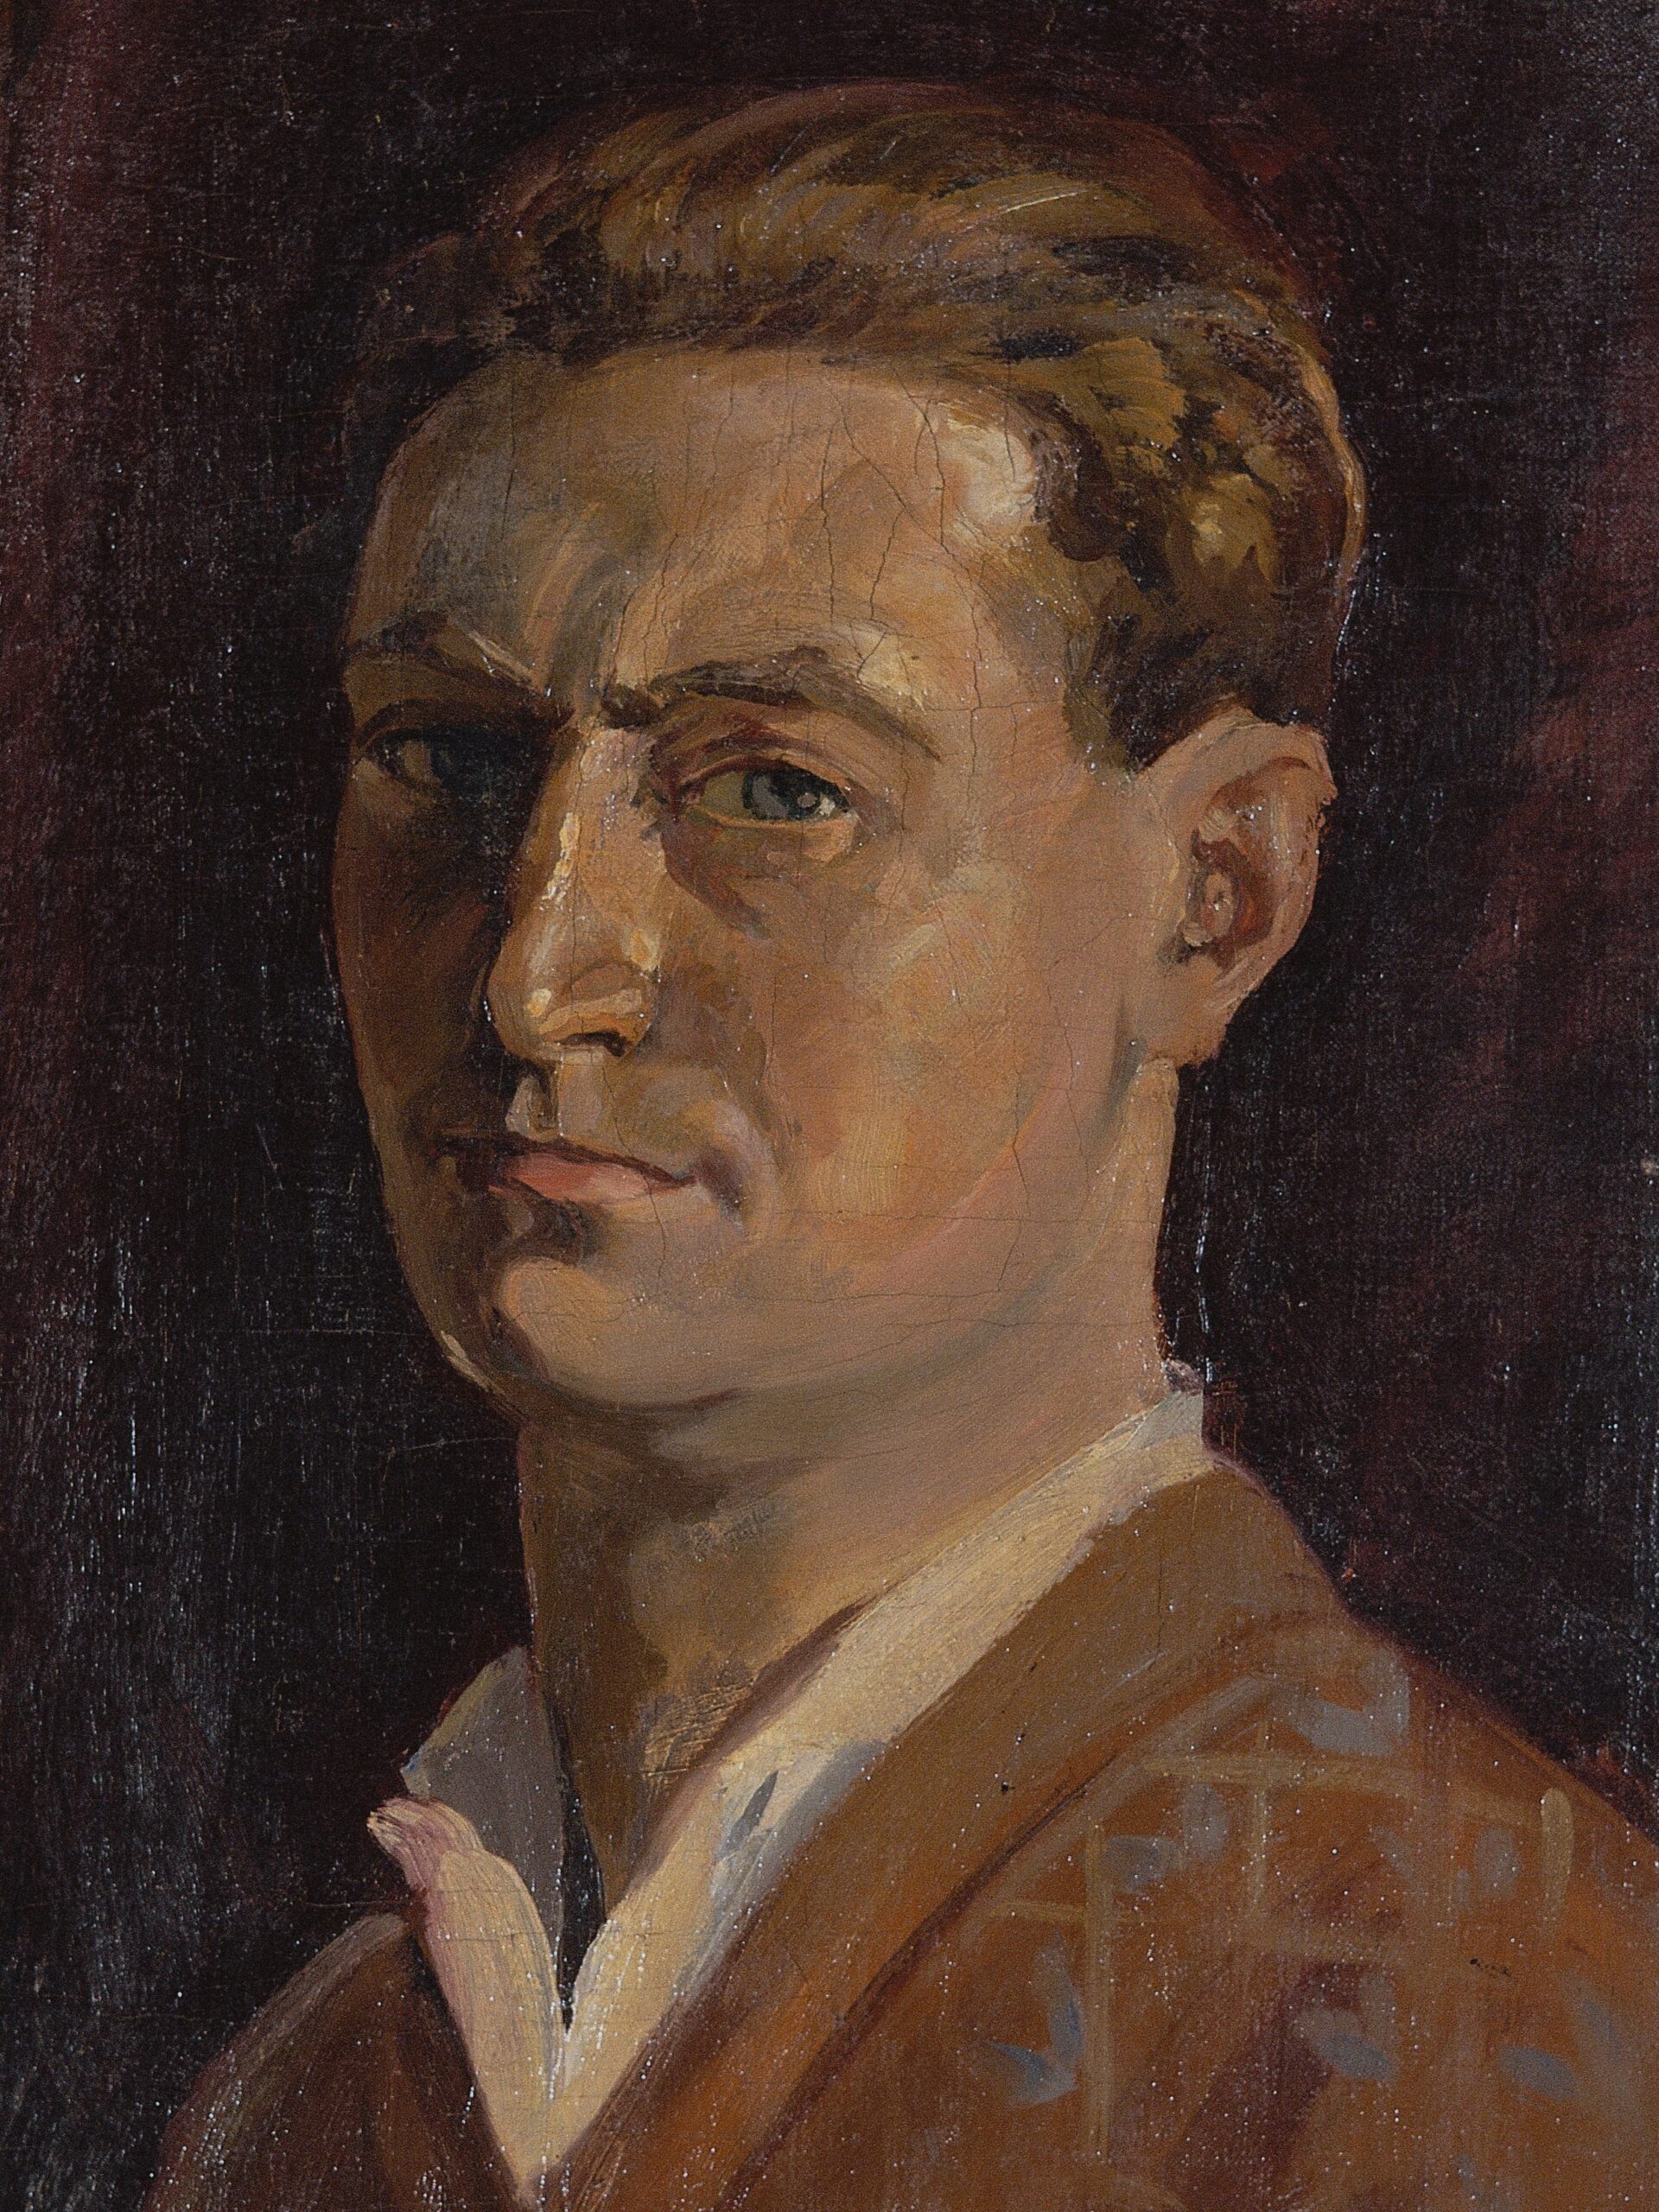 Pintura de José Manaut titulada Autorretrato con jersey rojo, 1920. Óleo sobre lienzo.